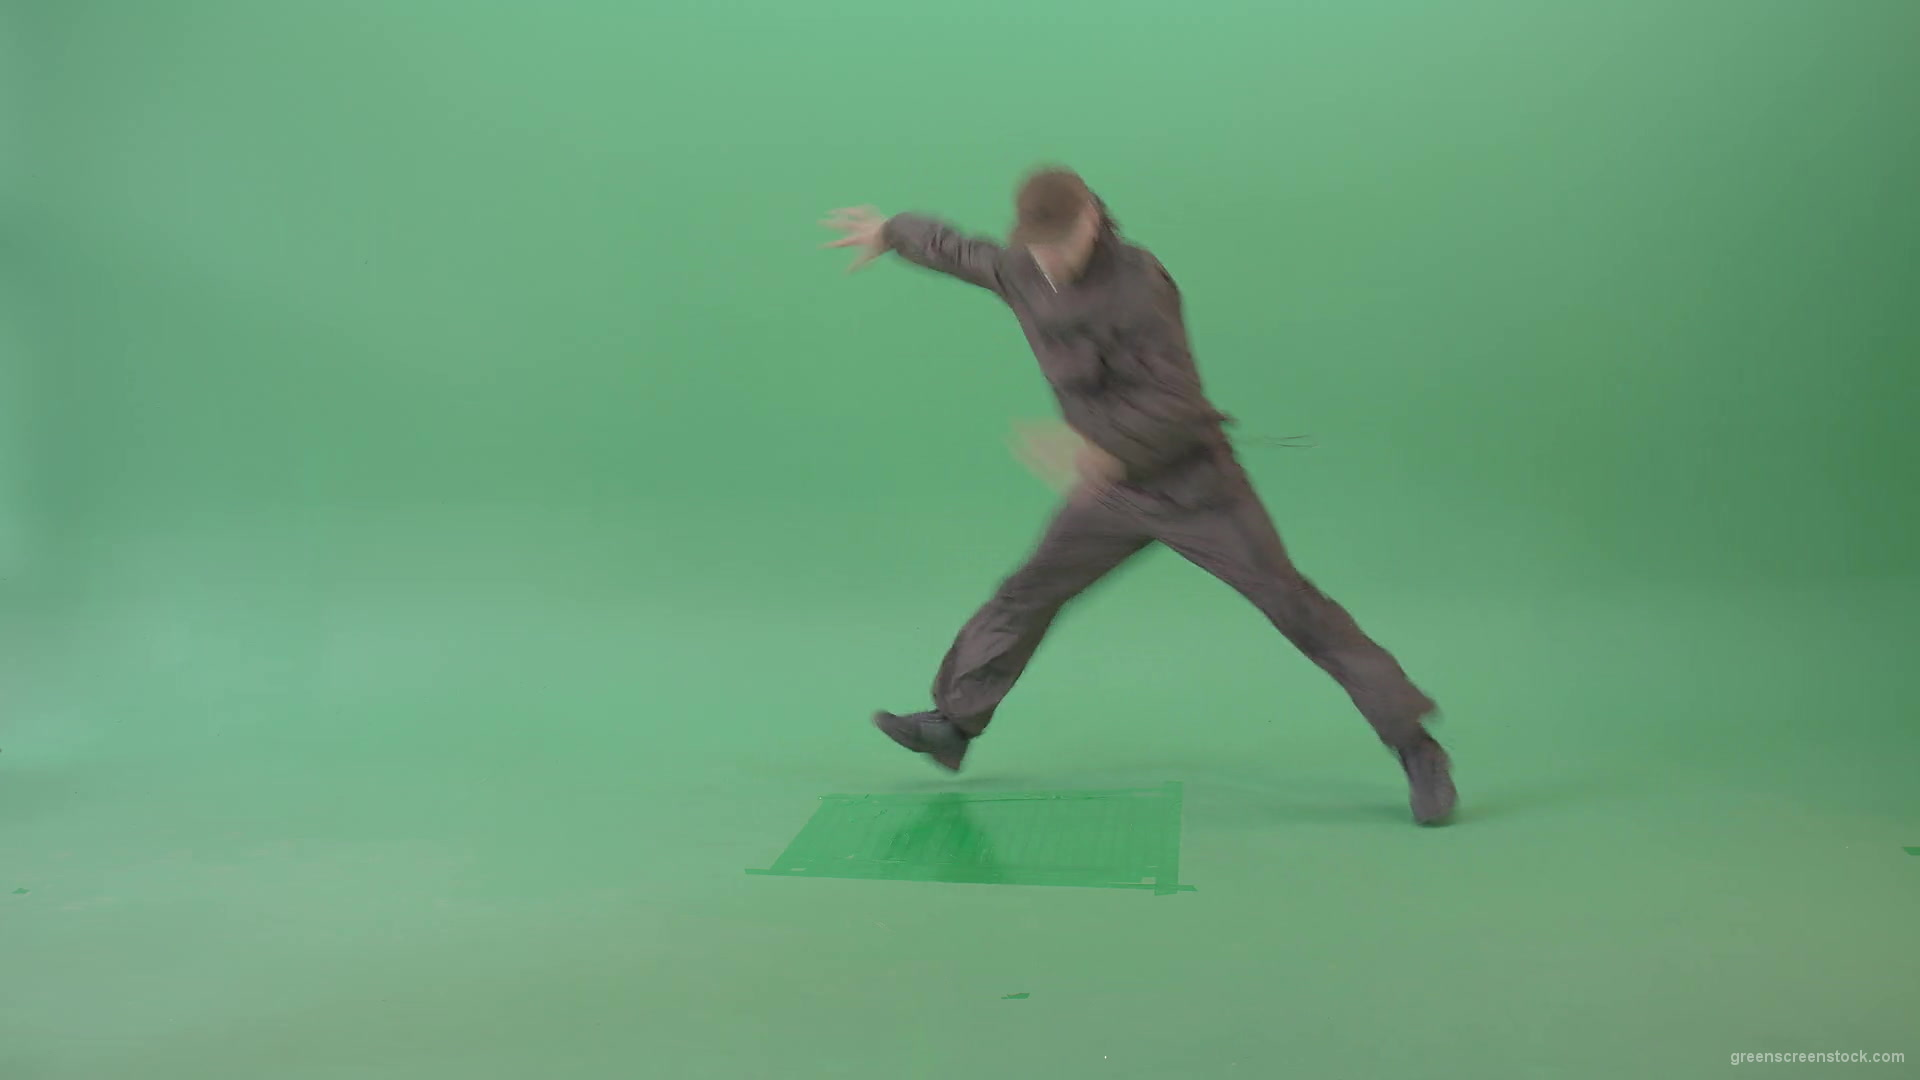 Man-dancing-breakdance-on-green-screen-4K-Video-Footage-1920_004 Green Screen Stock